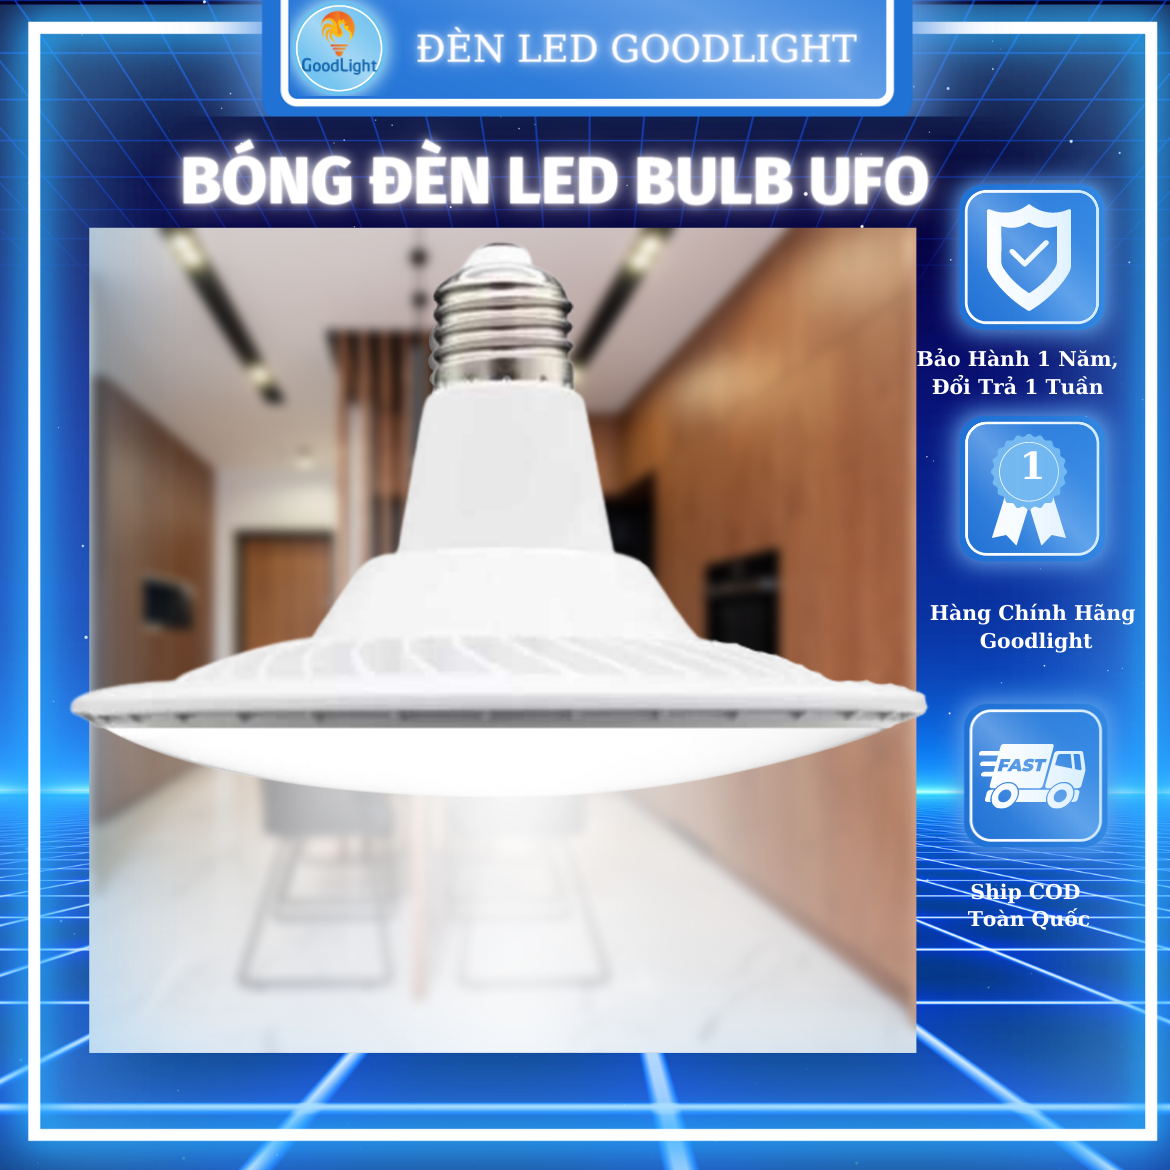 Bóng Đèn Led Bulb UFO Đuôi Đèn E27 Tháo Rời Được Siêu Sáng, Góc Chiếu Rộng, Chiếu Sáng Nhà Cửa, Trang Trí